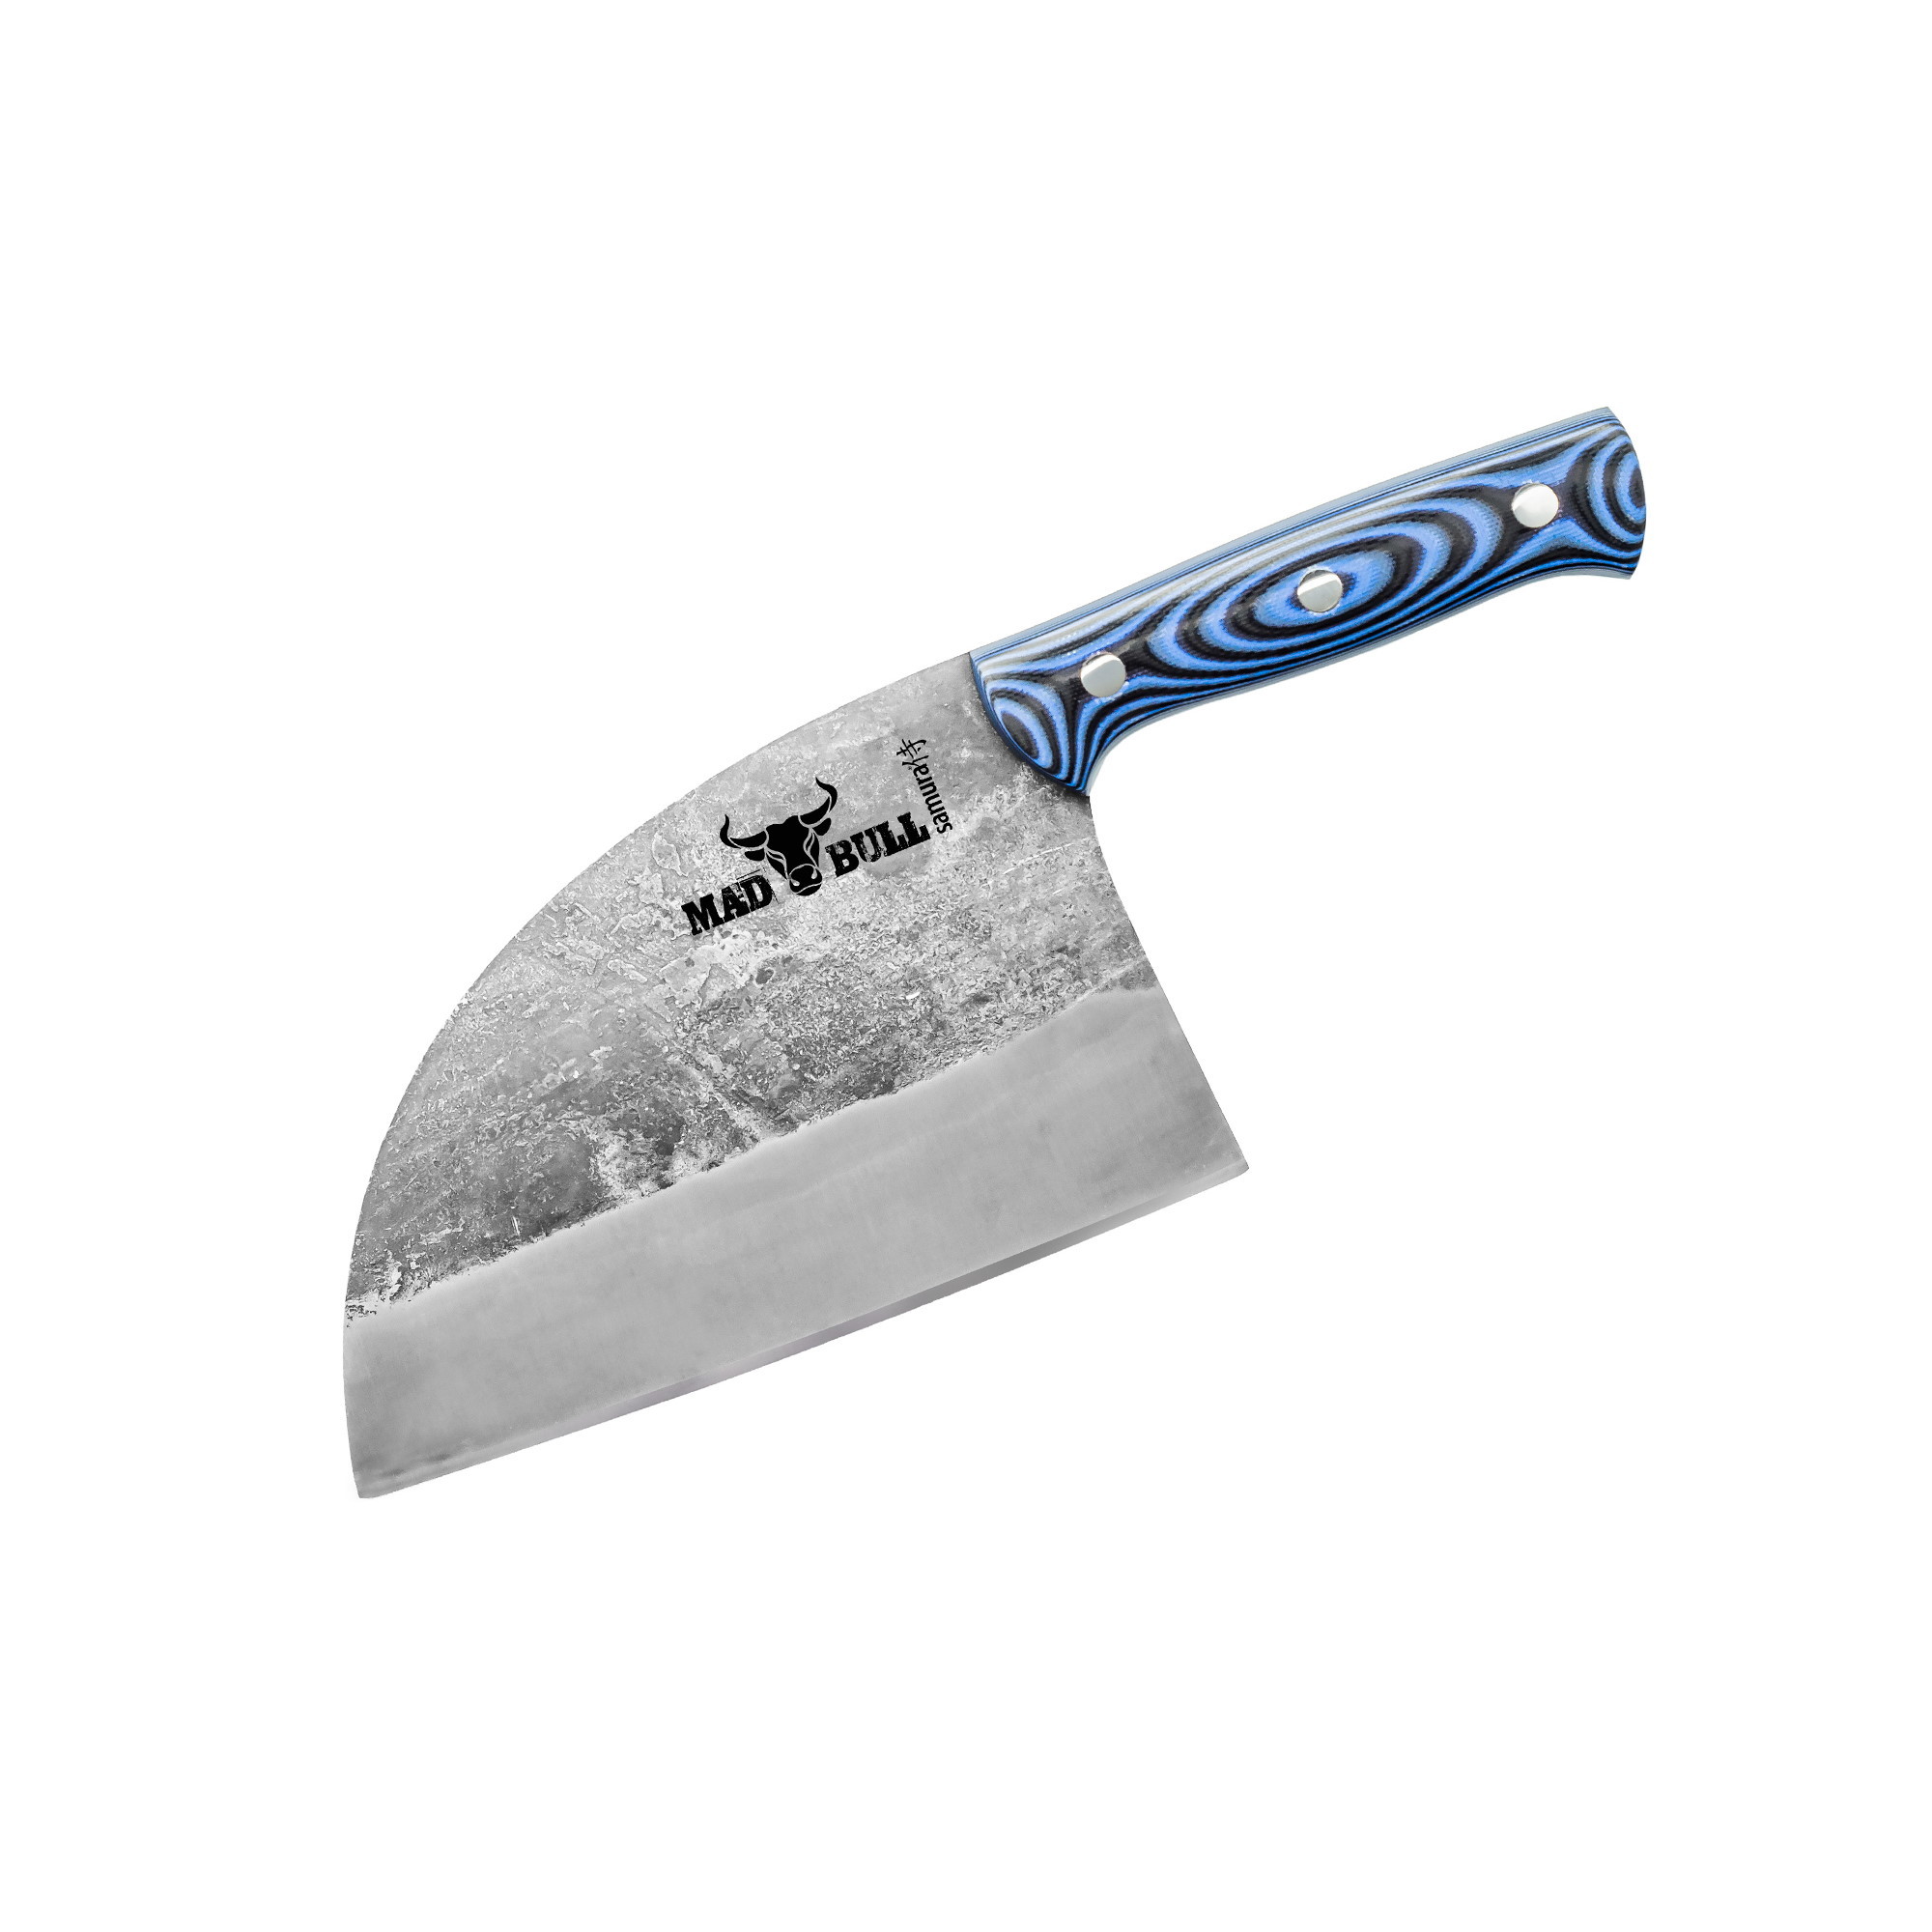 Сербский нож (топорик) Samura MAD BULL, сталь AUS-8, рукоять G10 топорик кельт